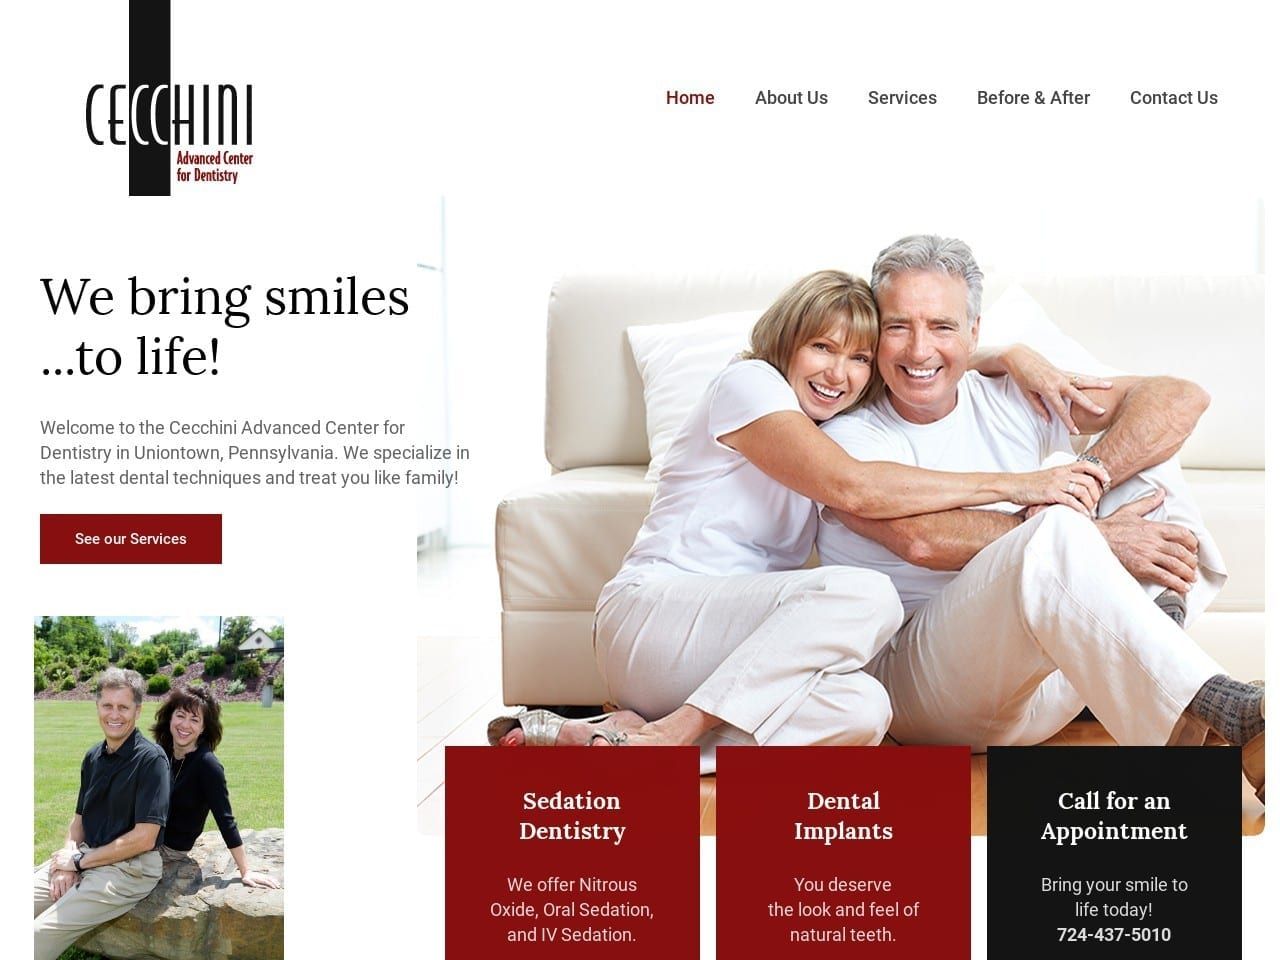 Cecchini Advanced Center For Dentistry Website Screenshot from cecchini.net